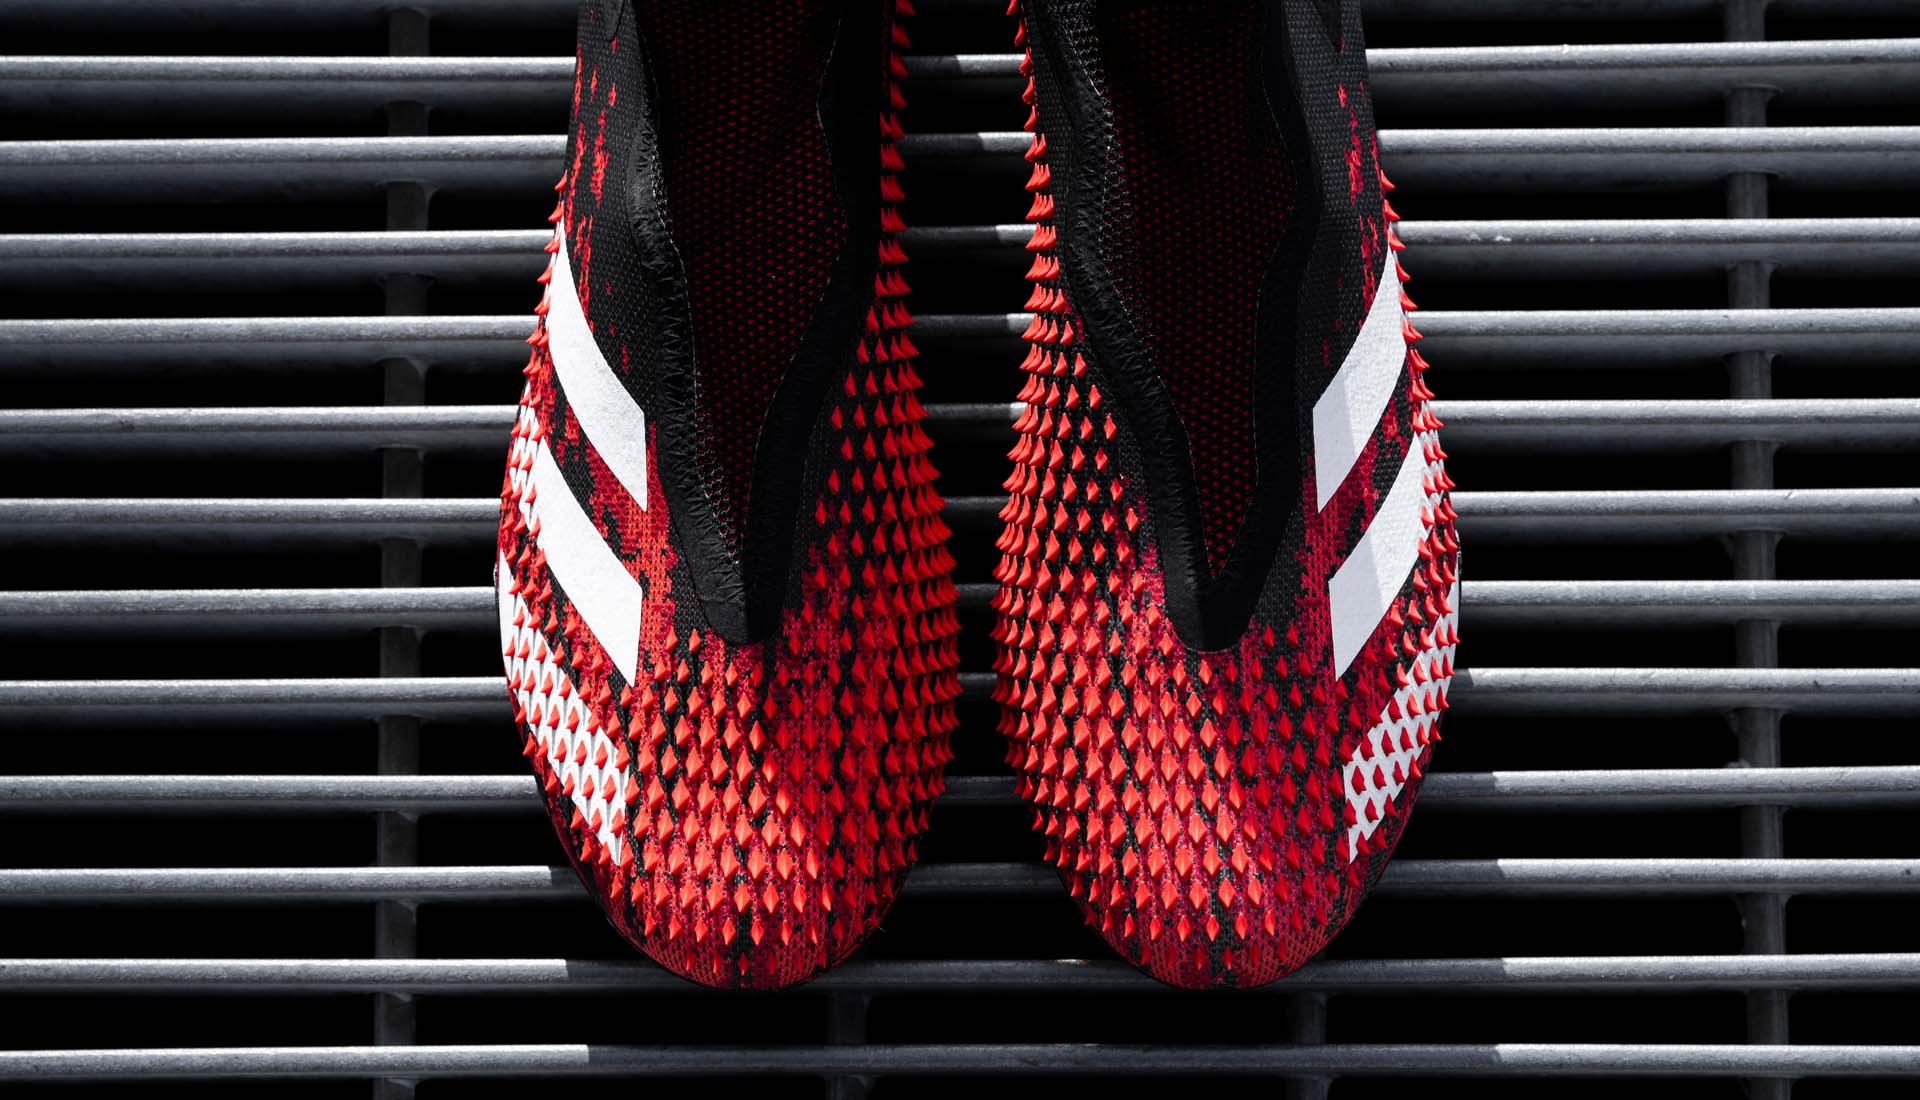 Các gai nhọn có trên bề mặt Adidas Predator được đánh giá là hỗ trợ hiệu quả khả năng kiểm soát bóng